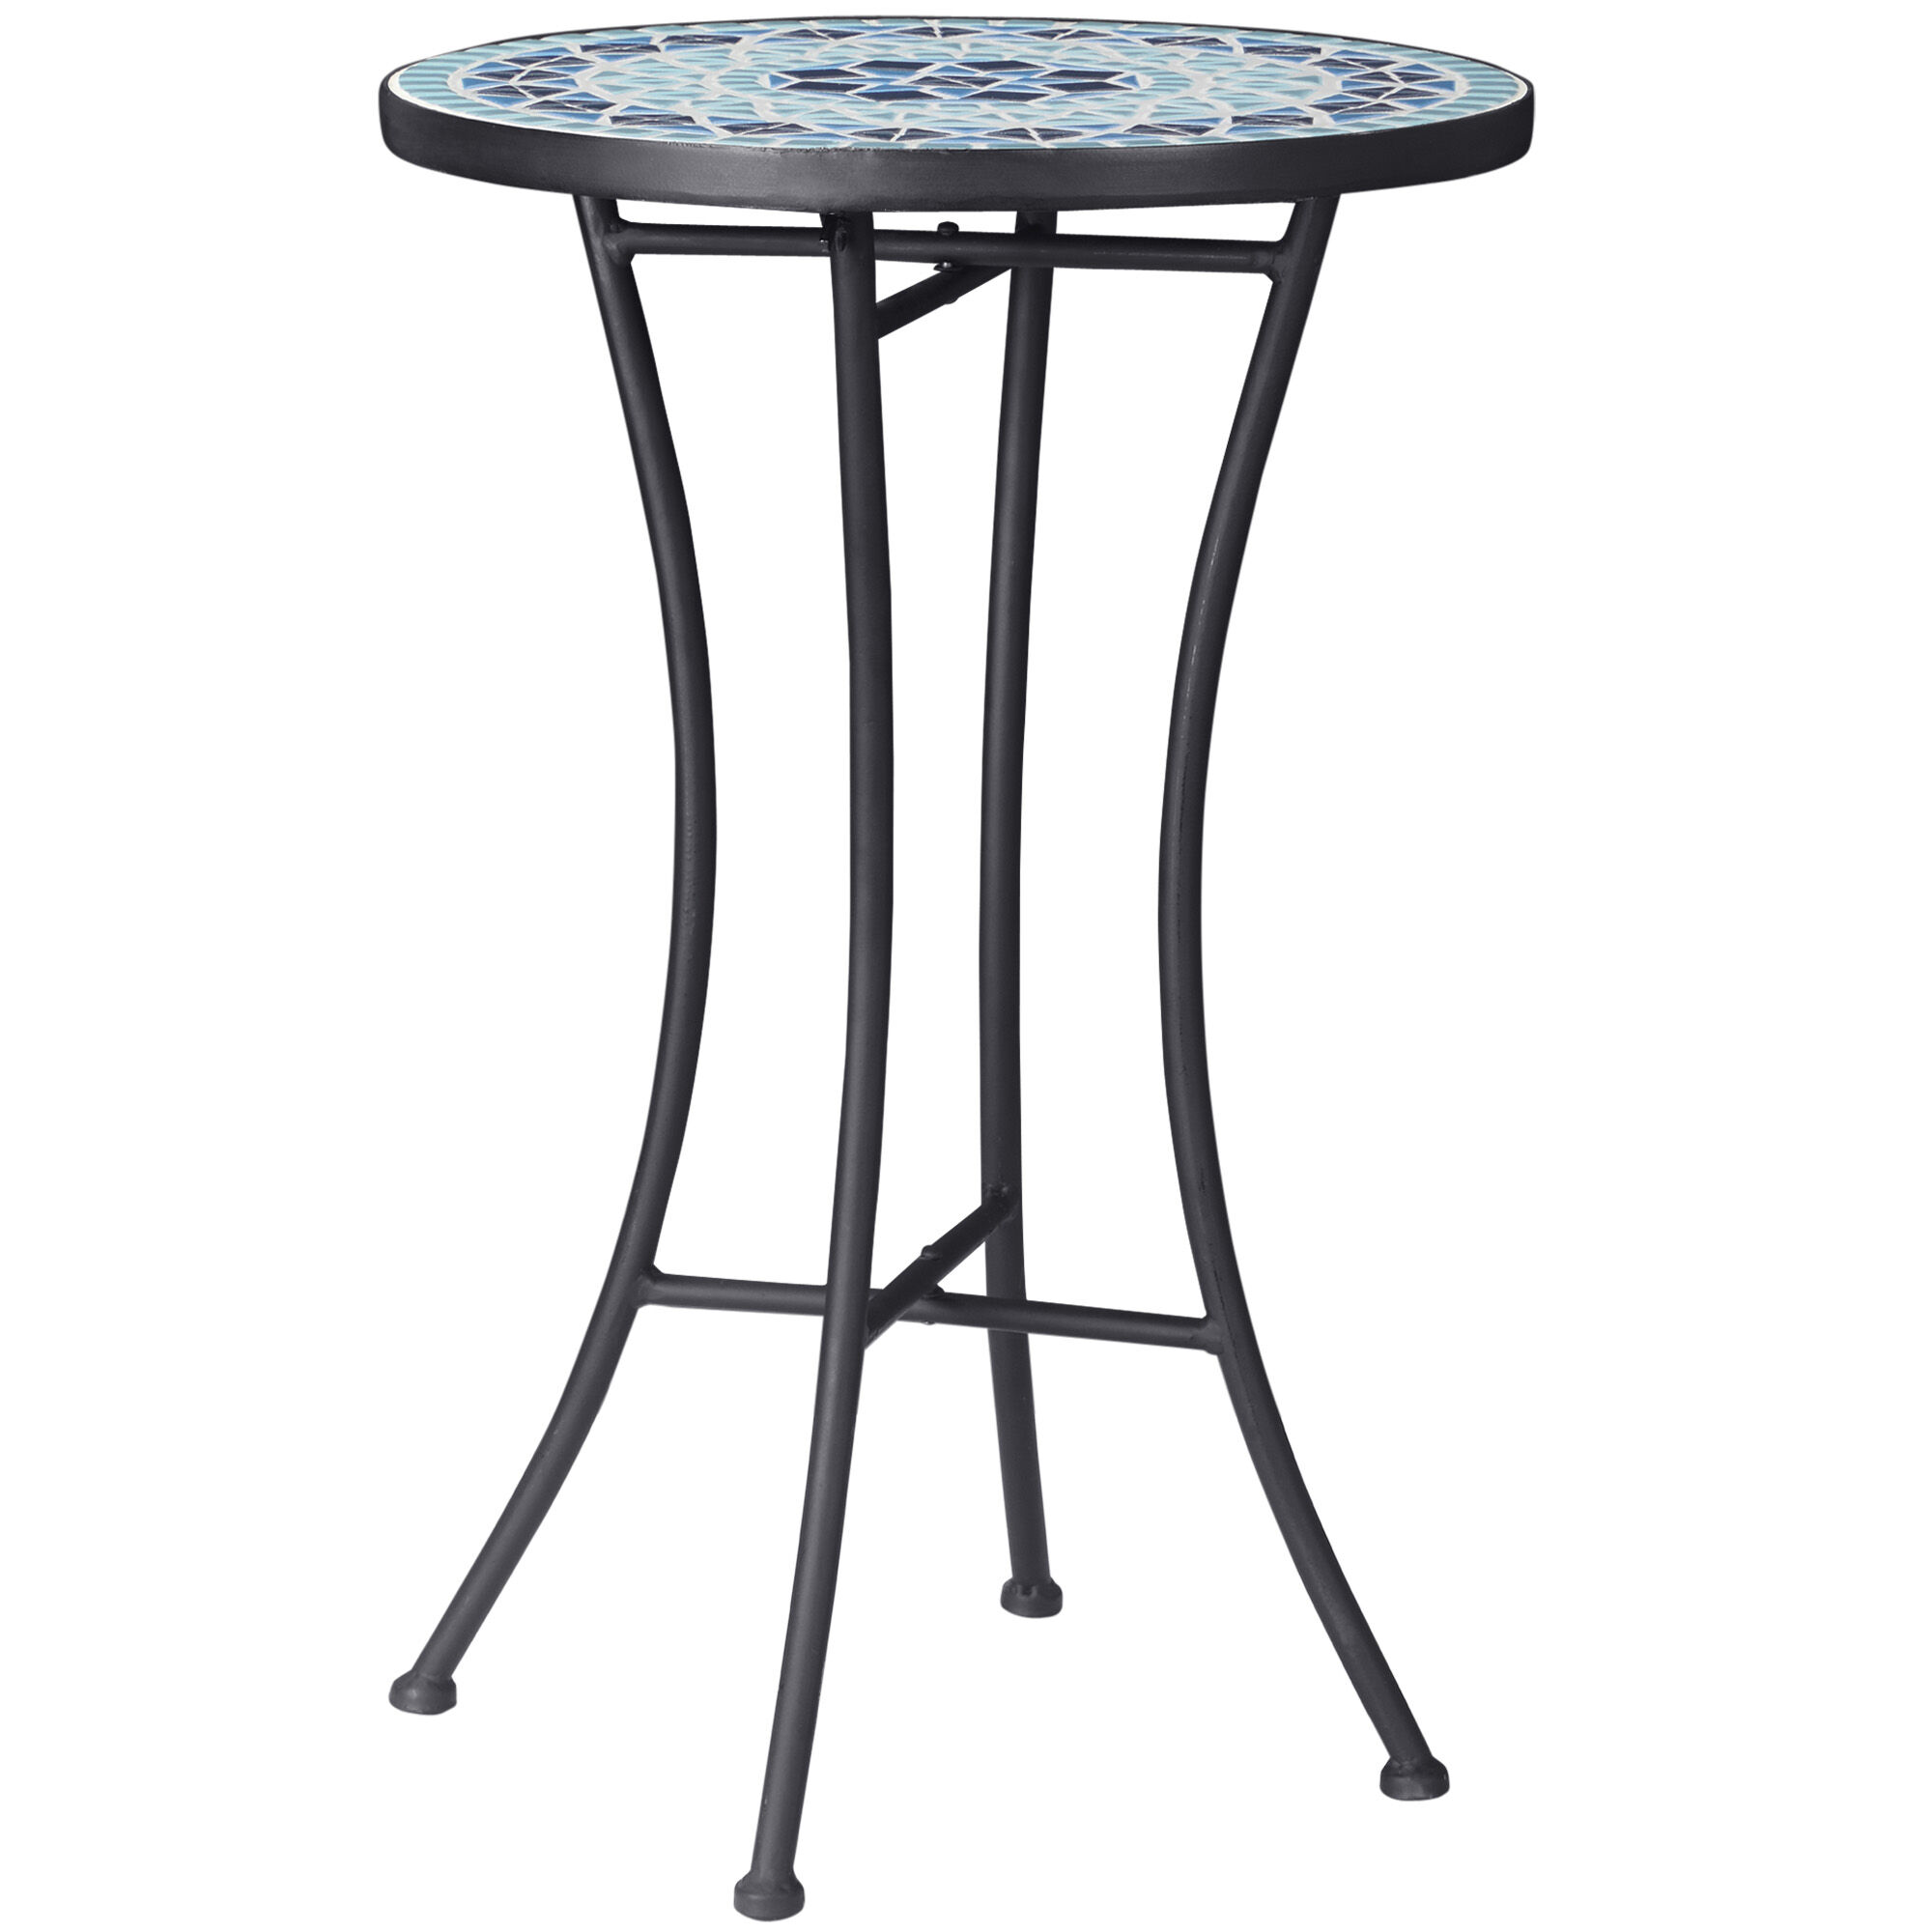 Outsunny Tavolino da Giardino Rotondo in Metallo con Piano in Ceramica, Design a Mosaico, Ф35.5x53.5cm, Blu